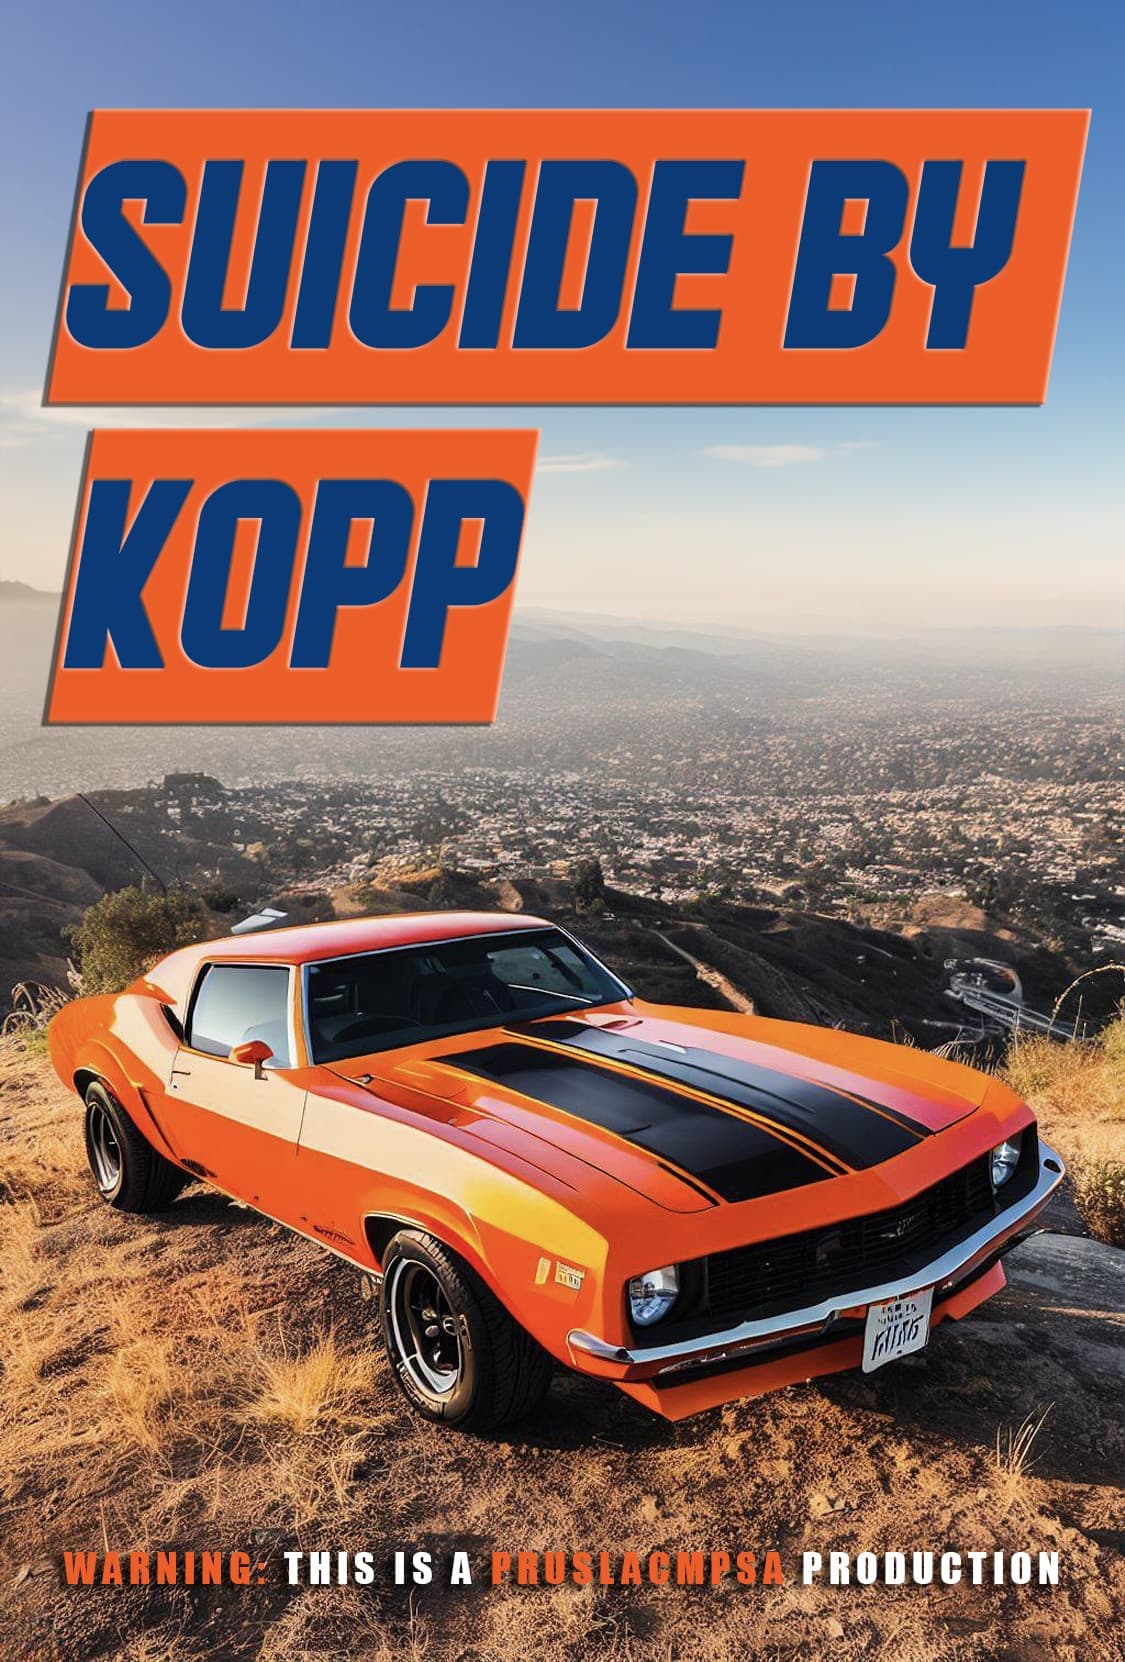 Suicide by Kopp